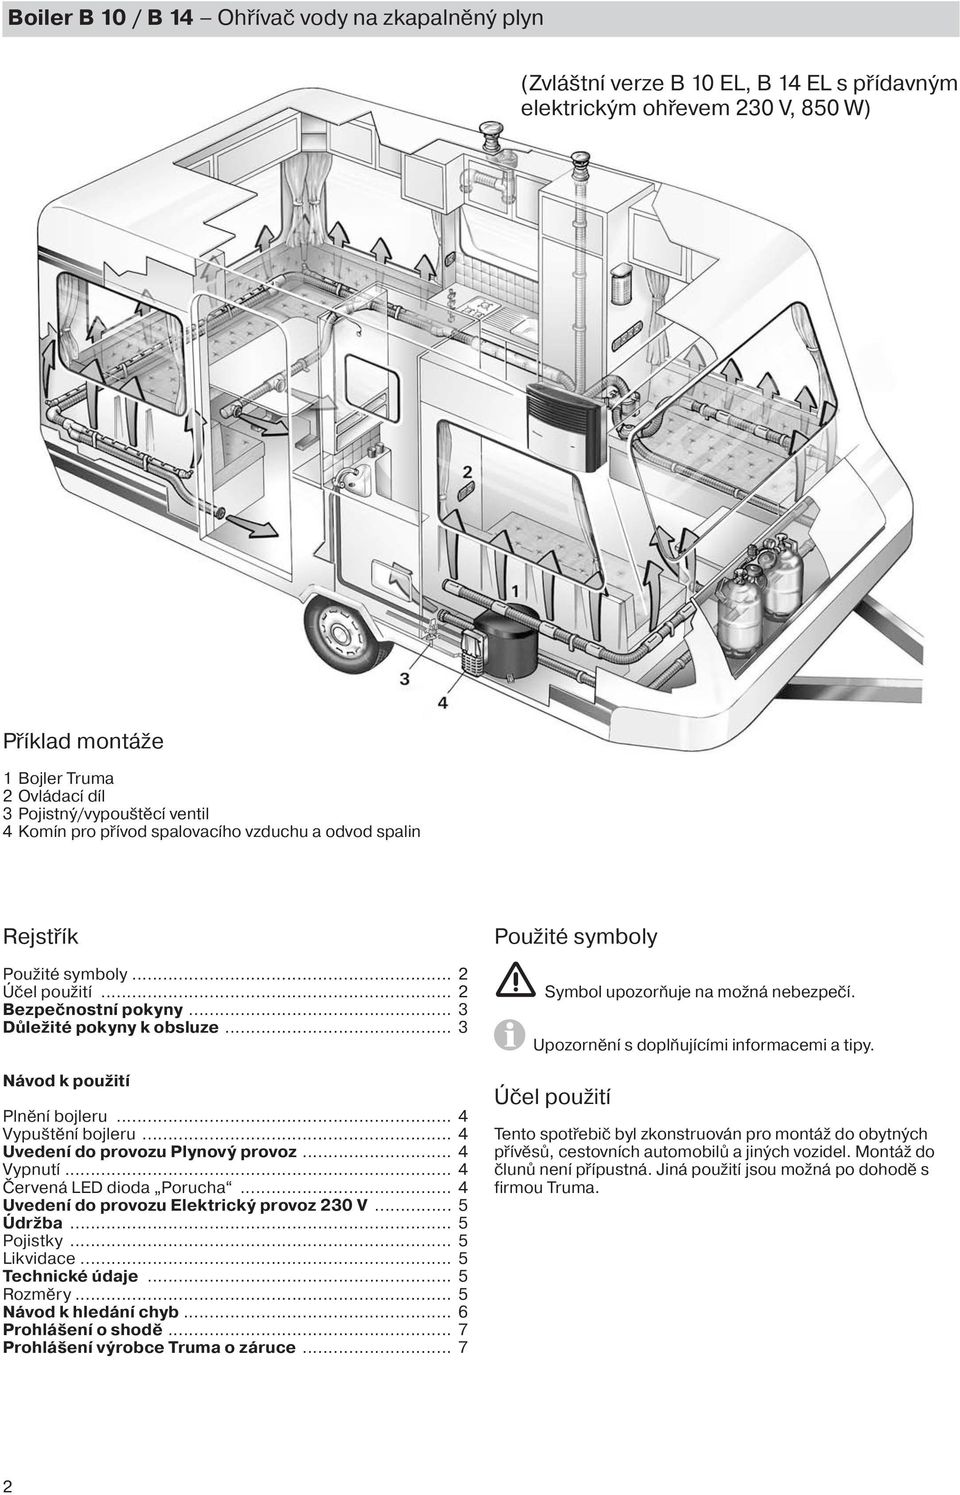 Boiler B 10 / B 14. Návod k použití Je nutno mít při jízde ve vozidle! -  PDF Stažení zdarma